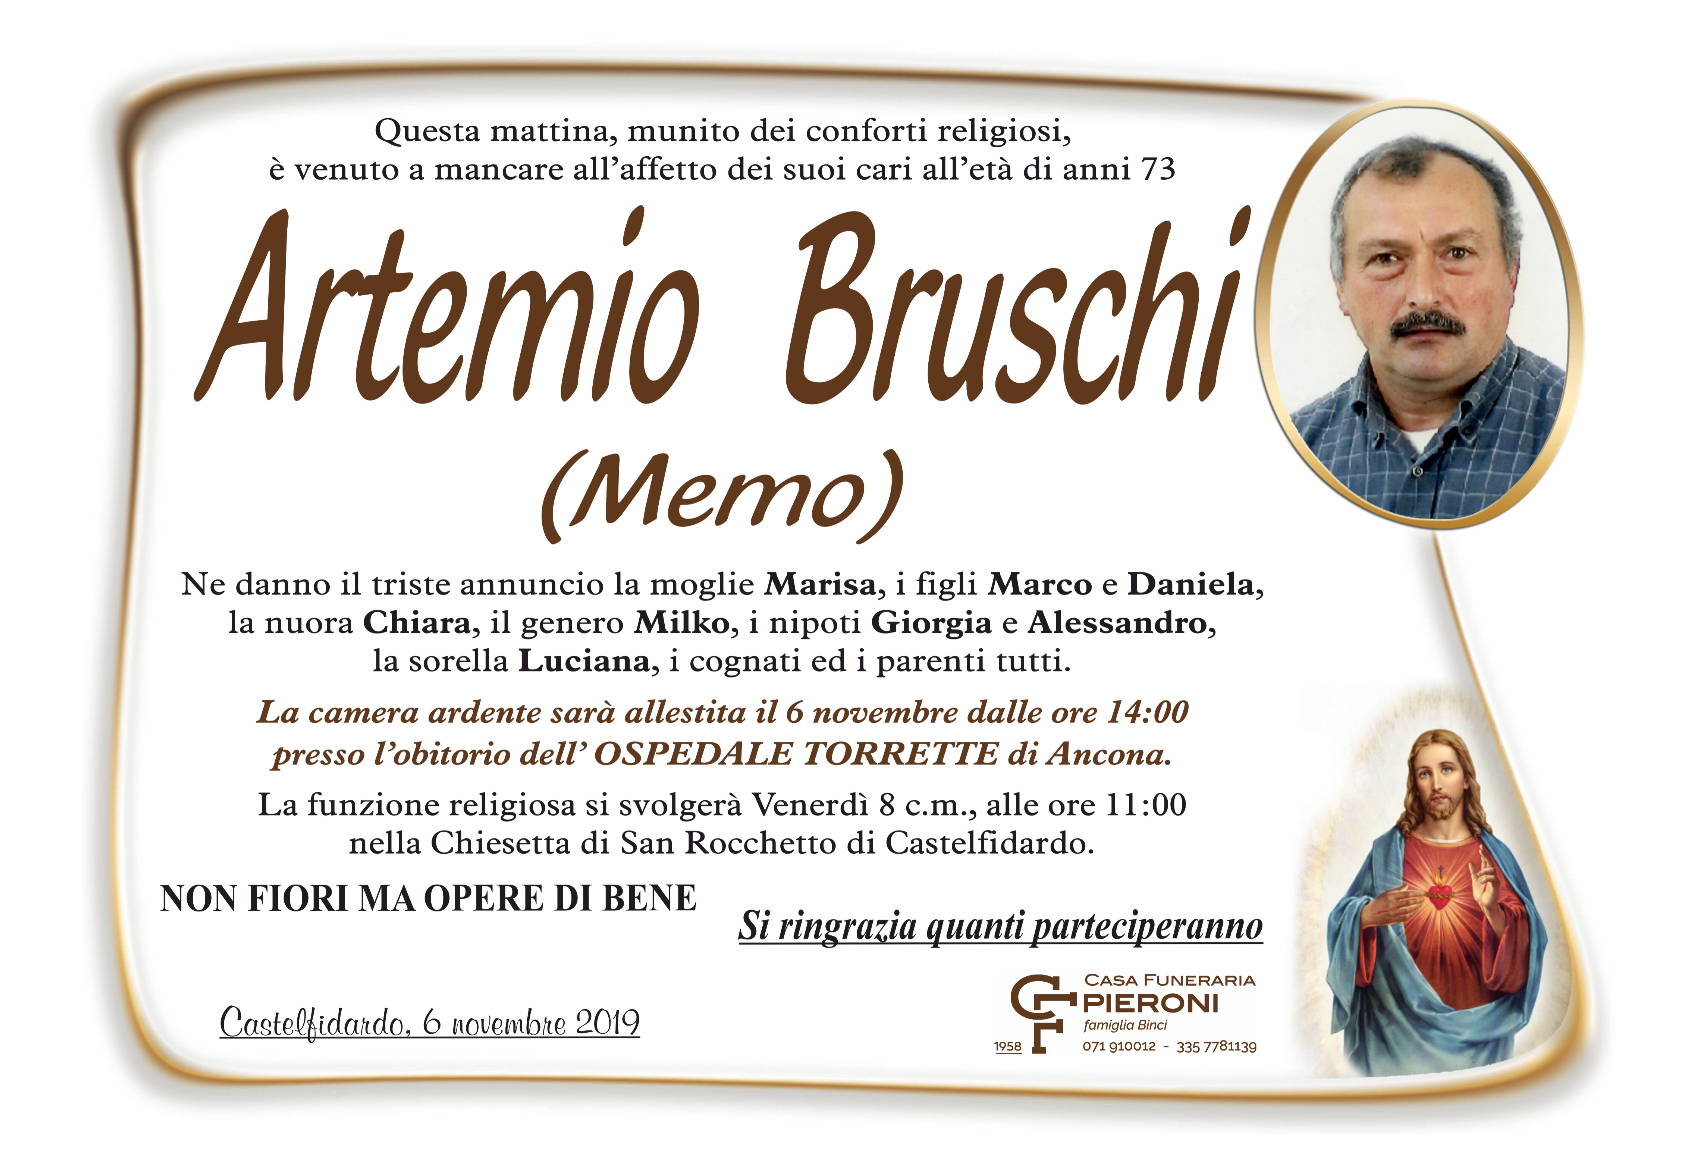 Artemio Bruschi